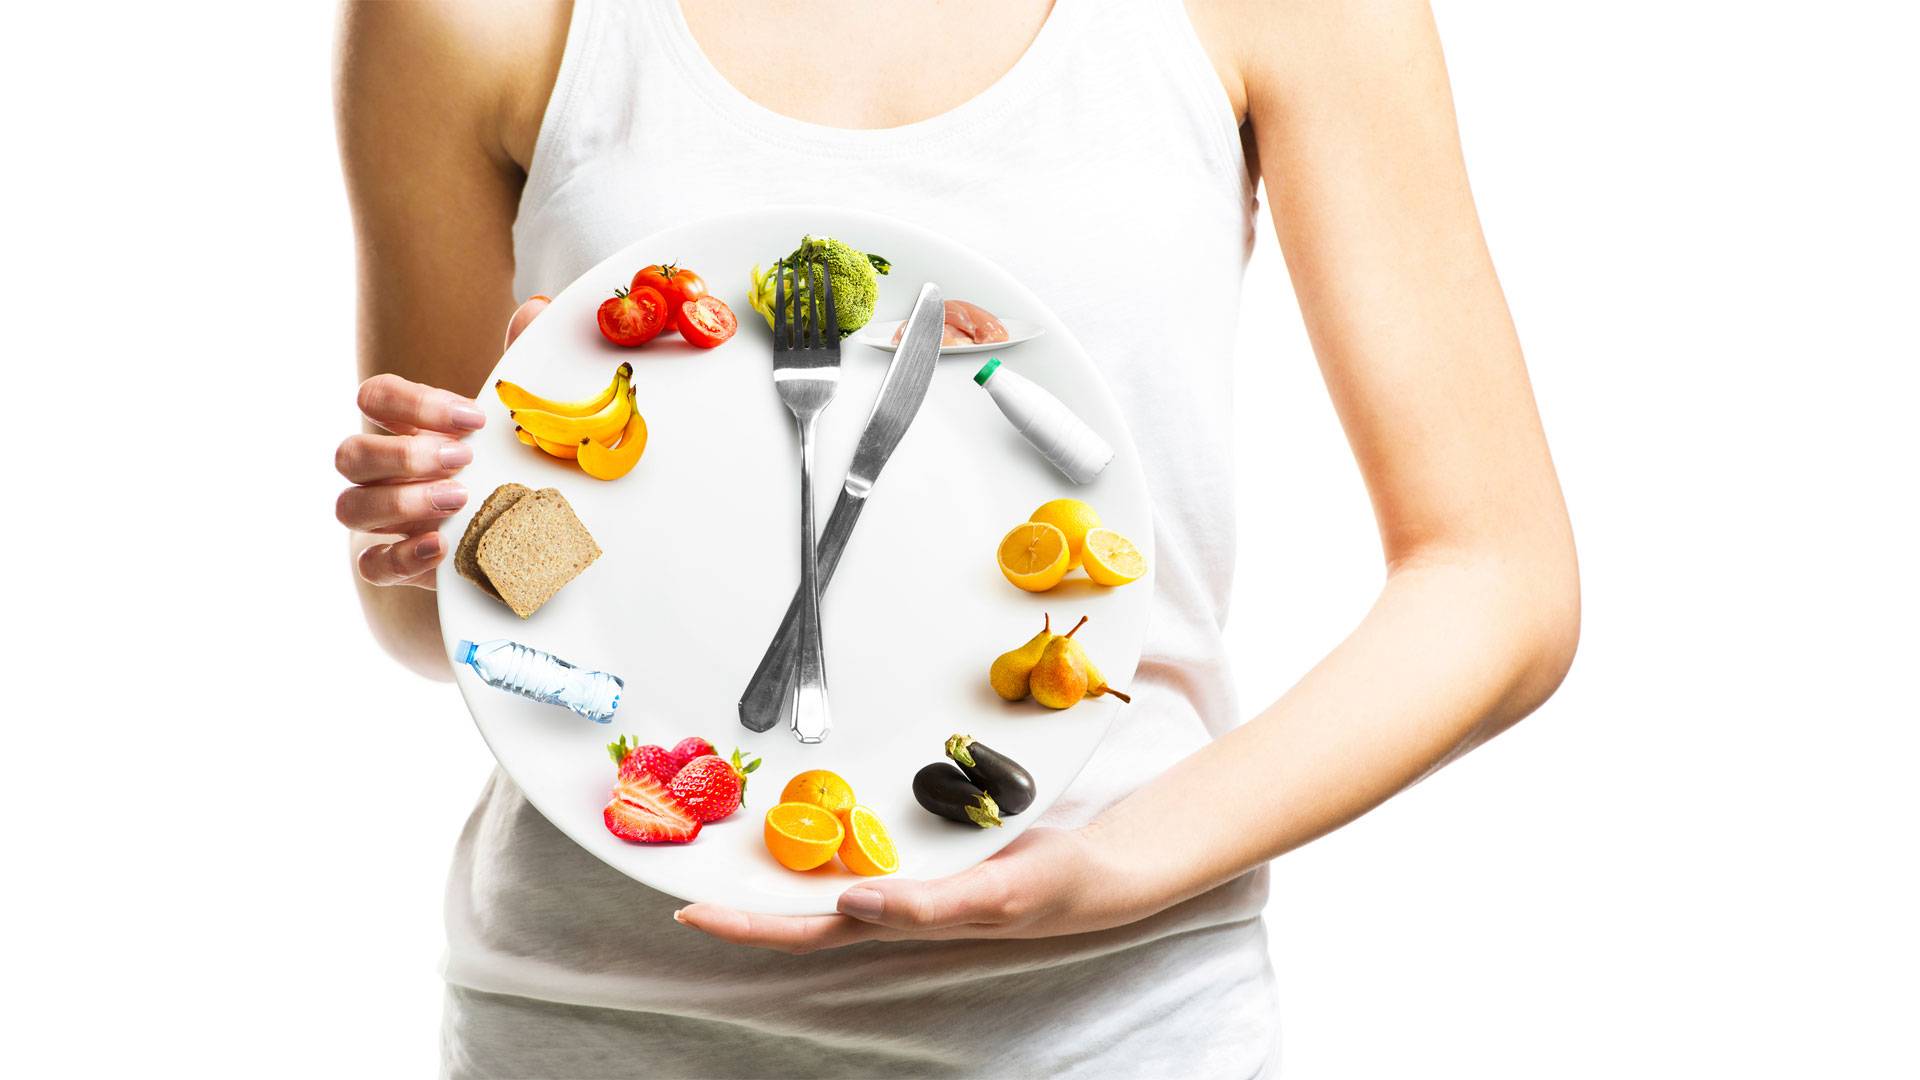 18 естественных способов ускорить метаболизм и сбросить лишний вес